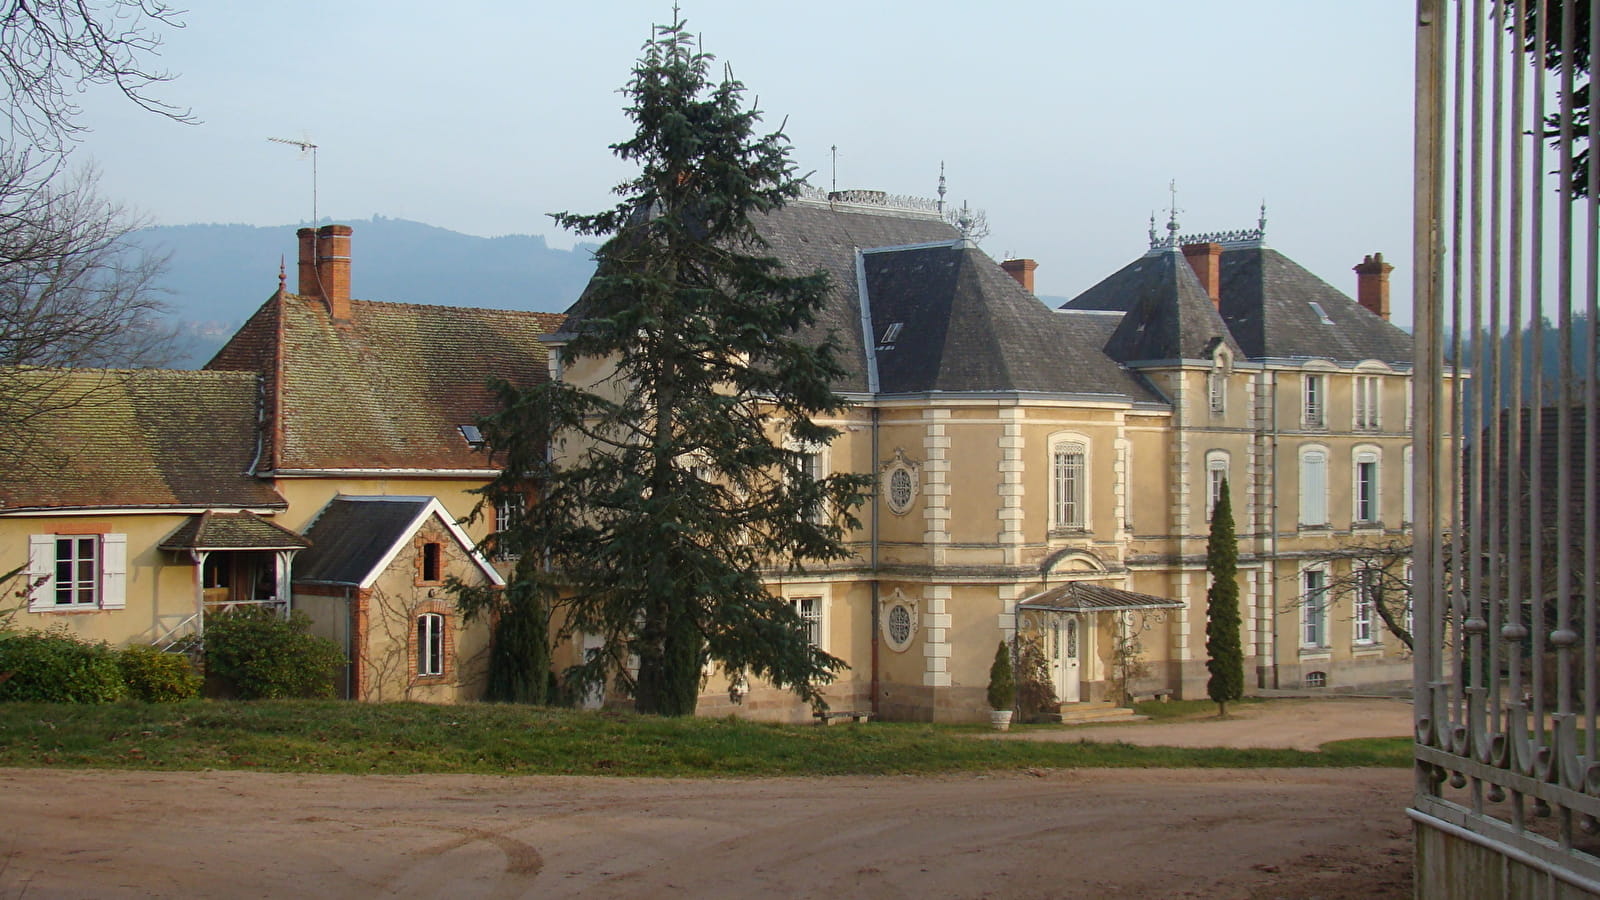 Camping du Château de Montrouant